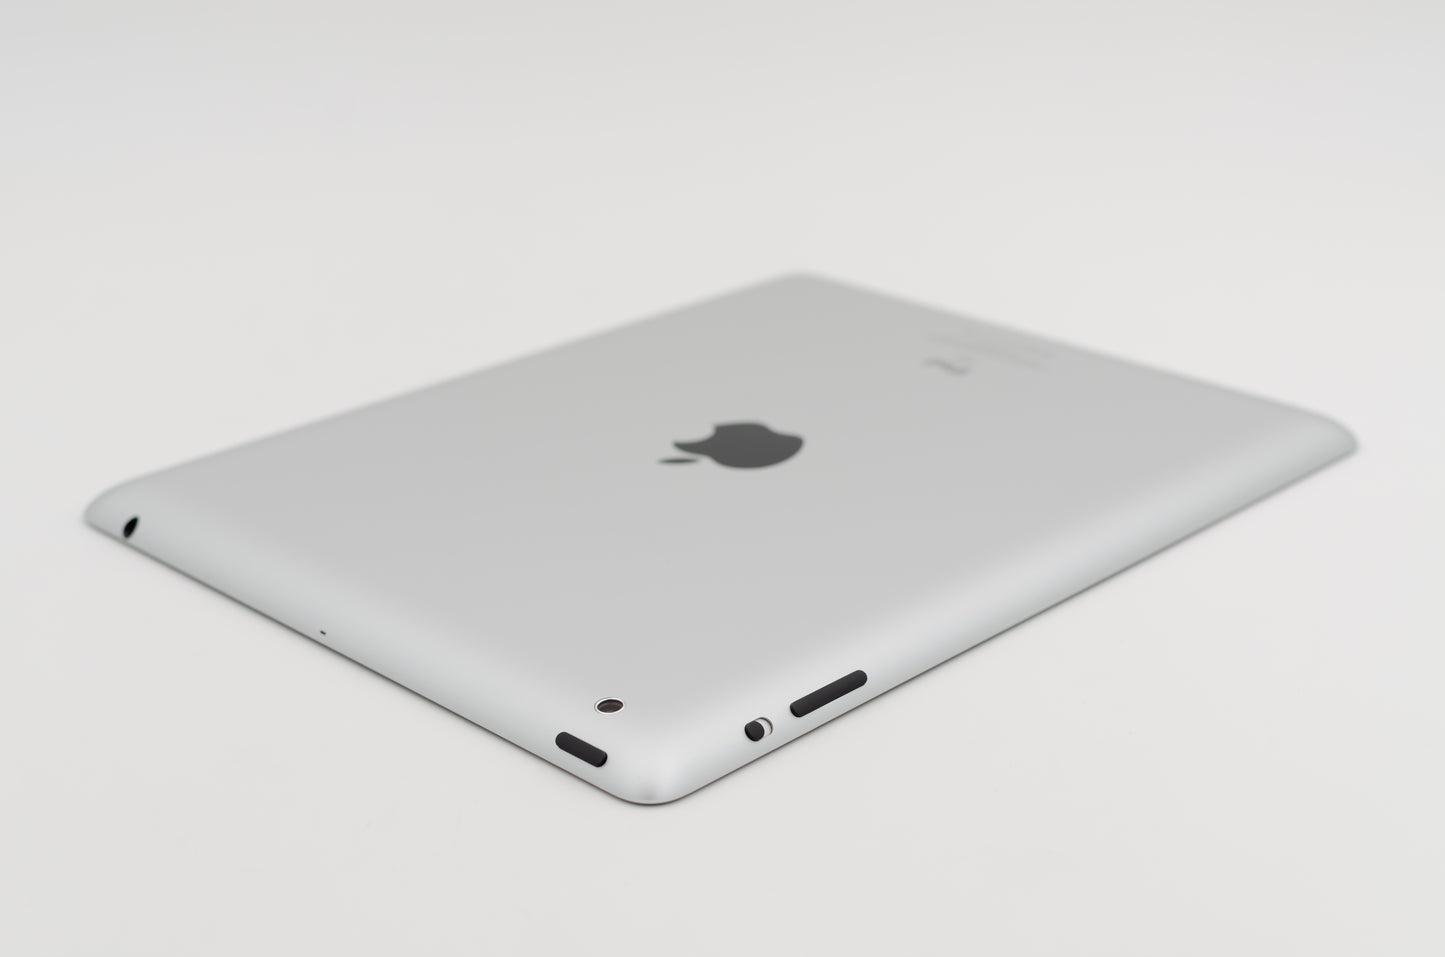 apple-2011-9.7-inch-ipad-2-a1397-silver/black-5